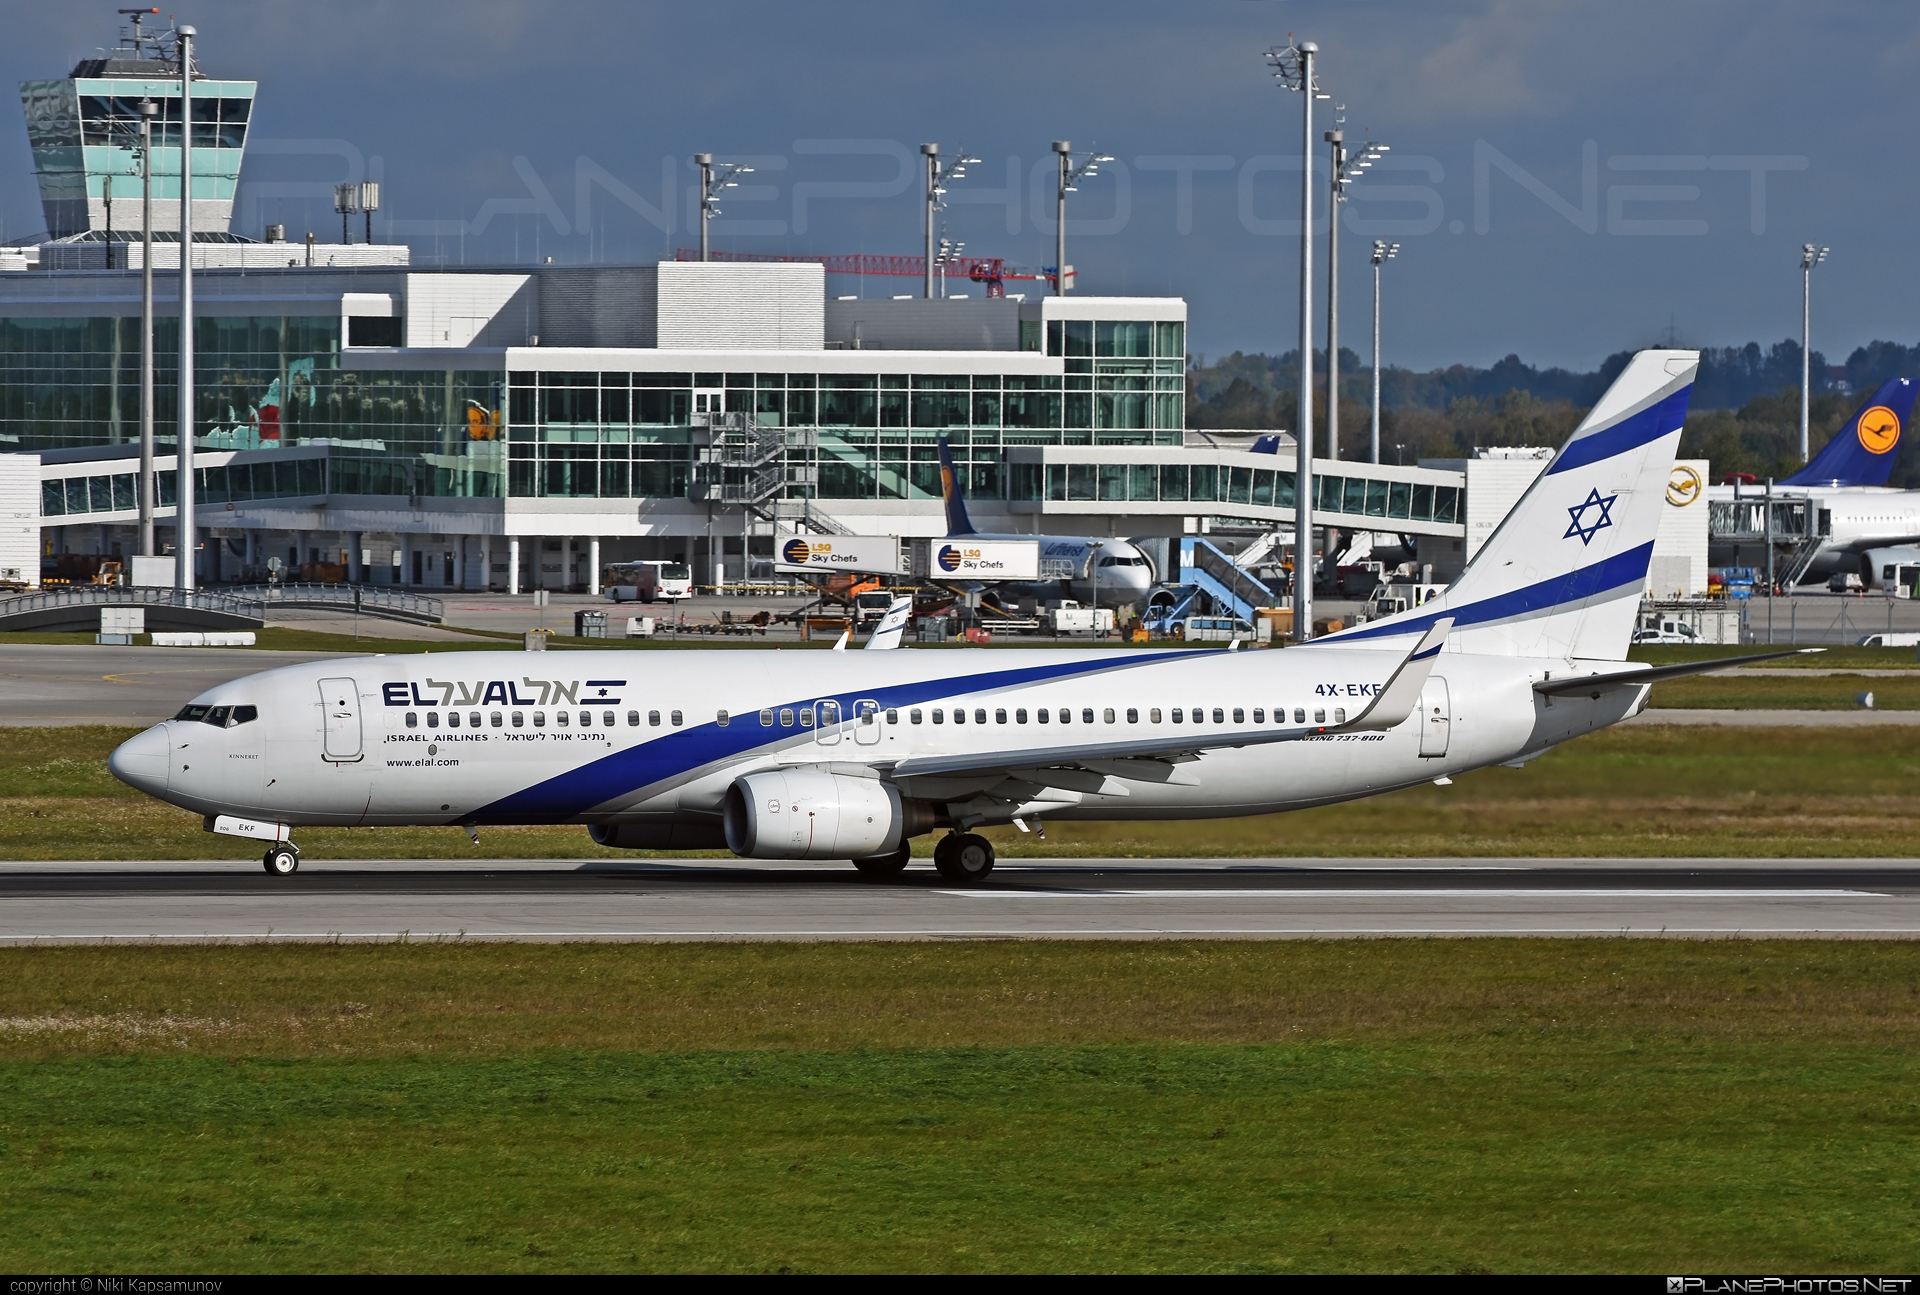 Boeing 737-800 - 4X-EKF operated by El Al Israel Airlines #b737 #b737nextgen #b737ng #boeing #boeing737 #elal #elalisraelairlines #israelairlines